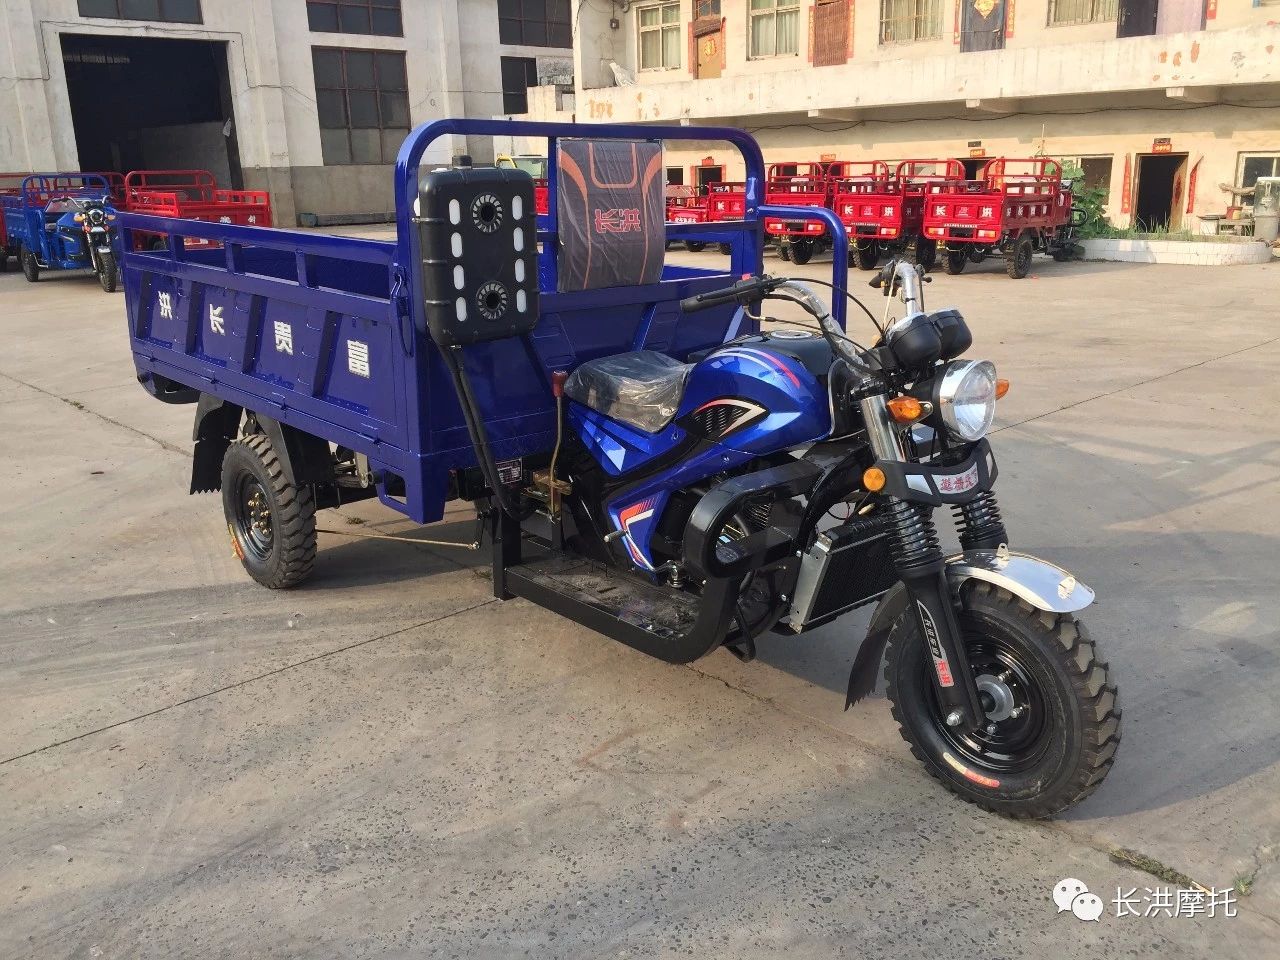 Changhong motorcycle H11